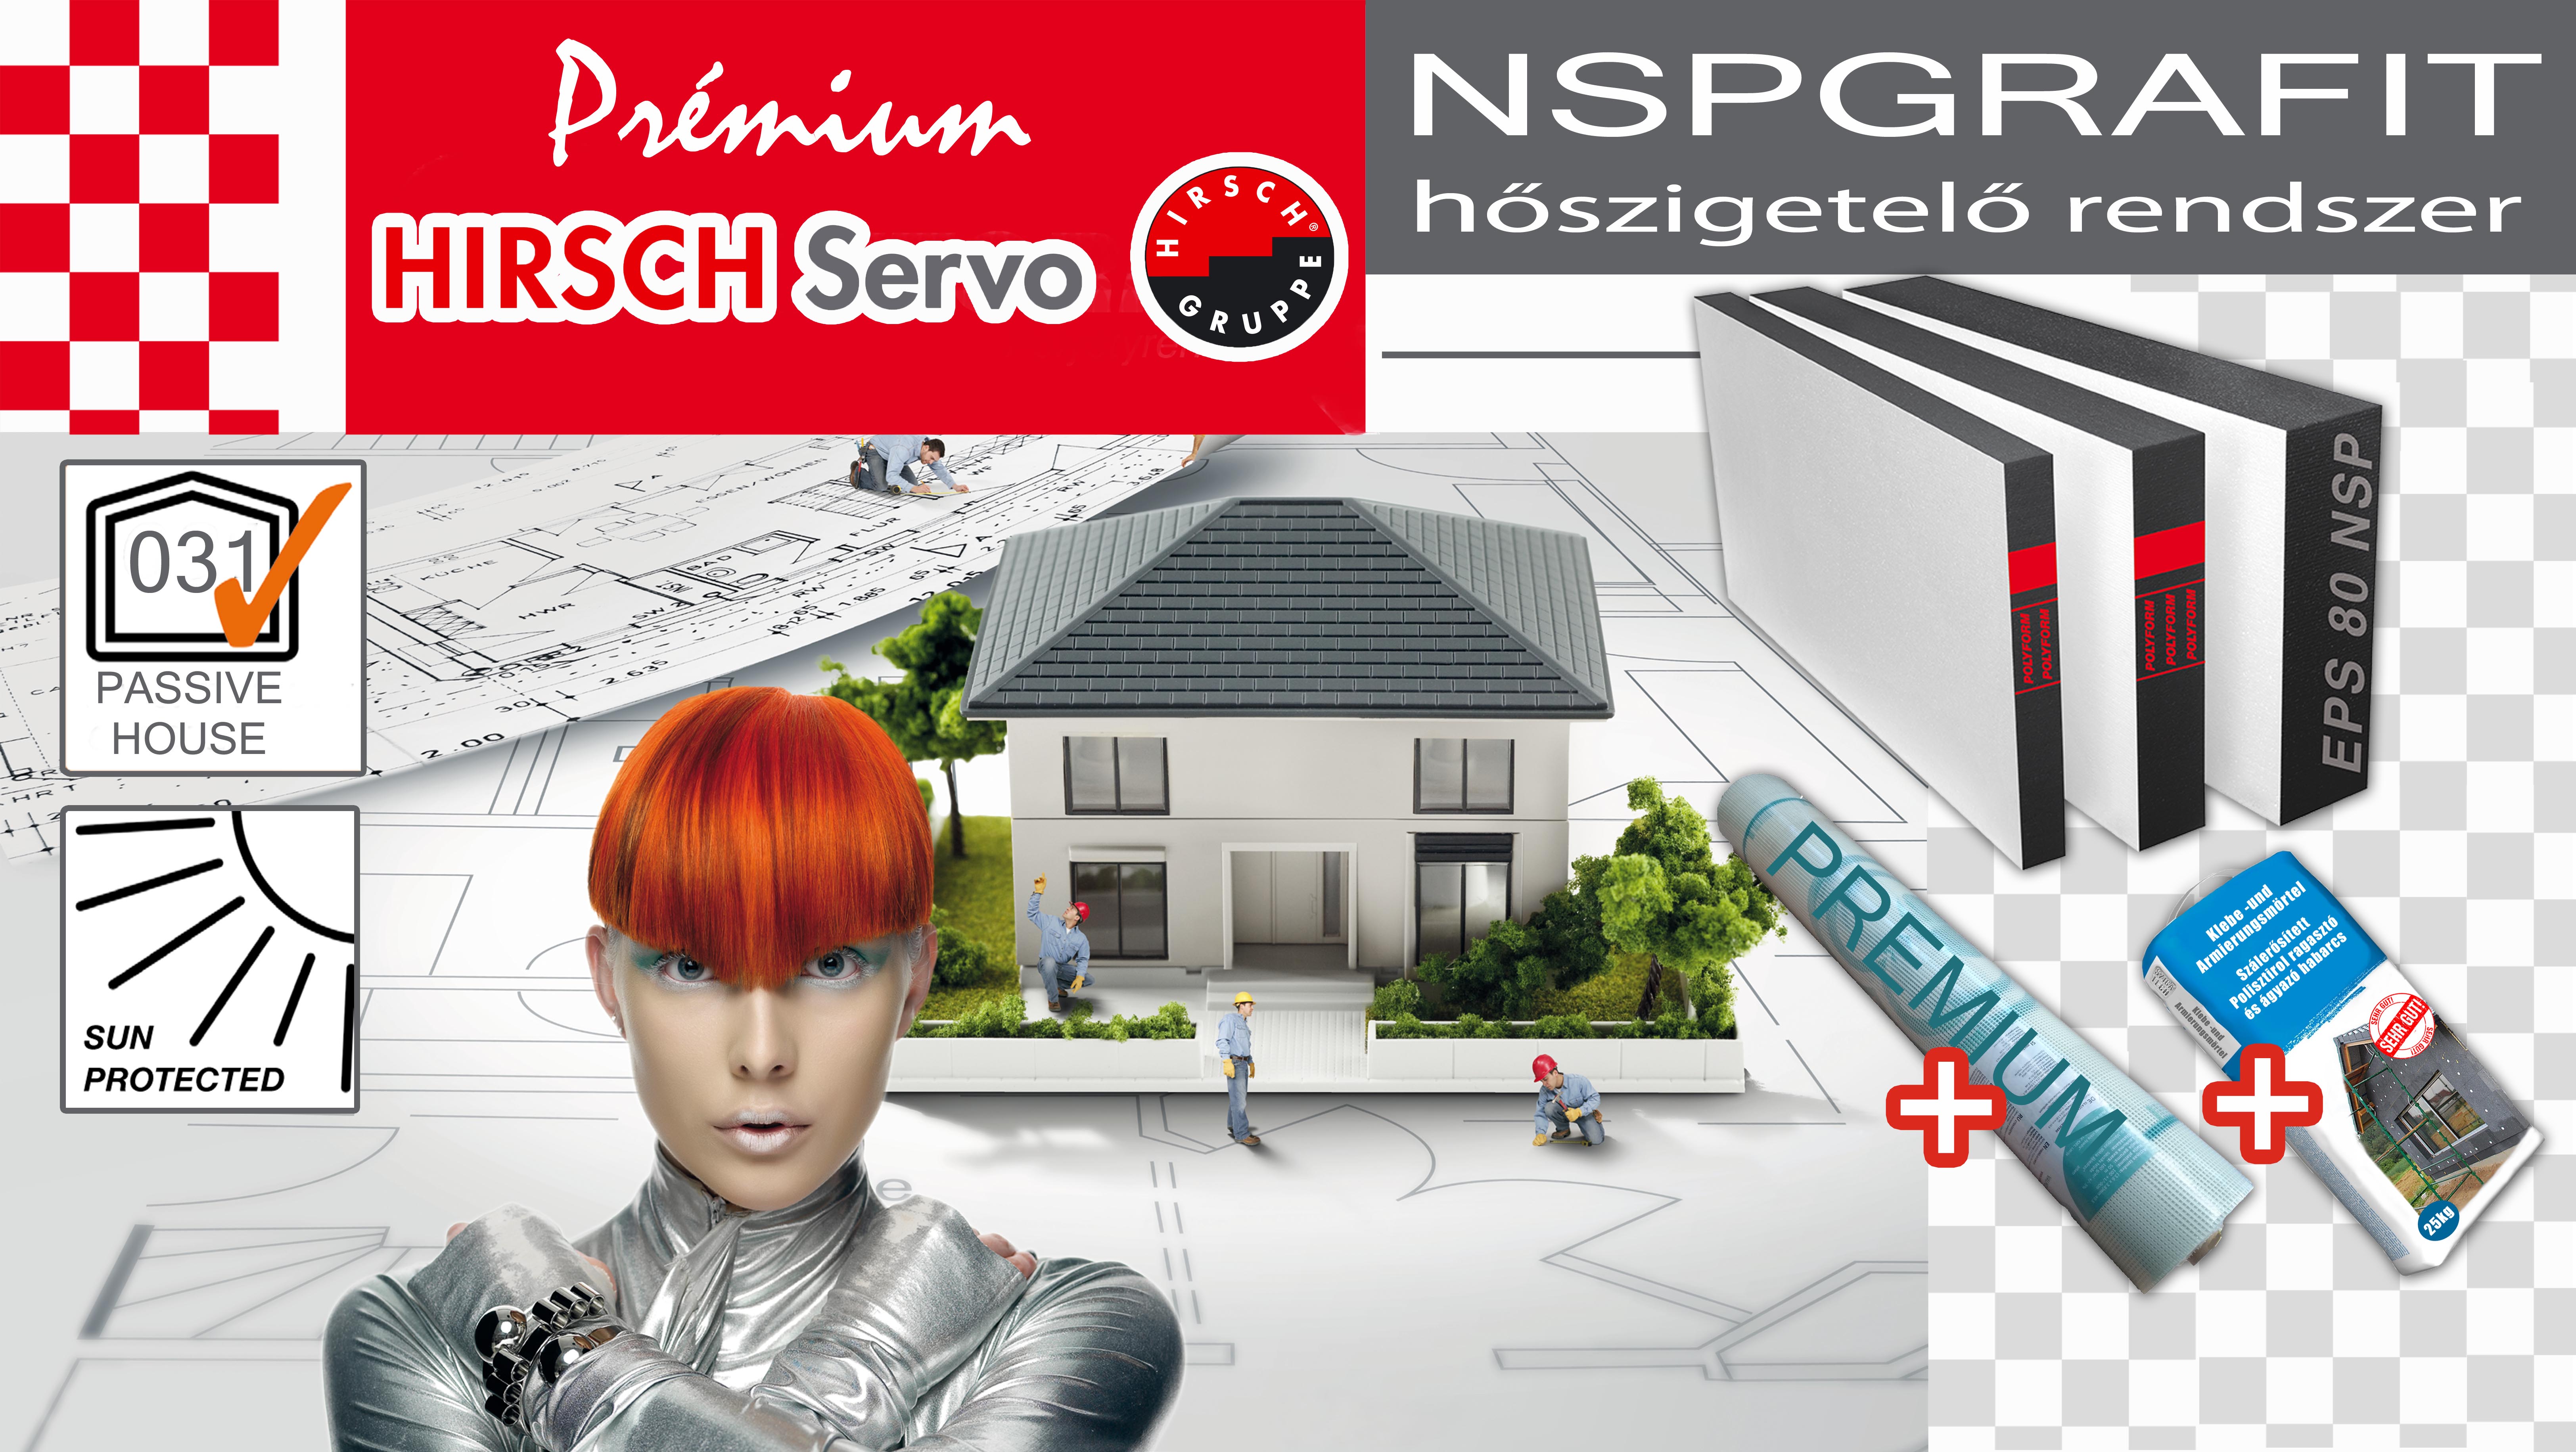 prémium-hirsch-nsp-rendszer-akcio-2018-05